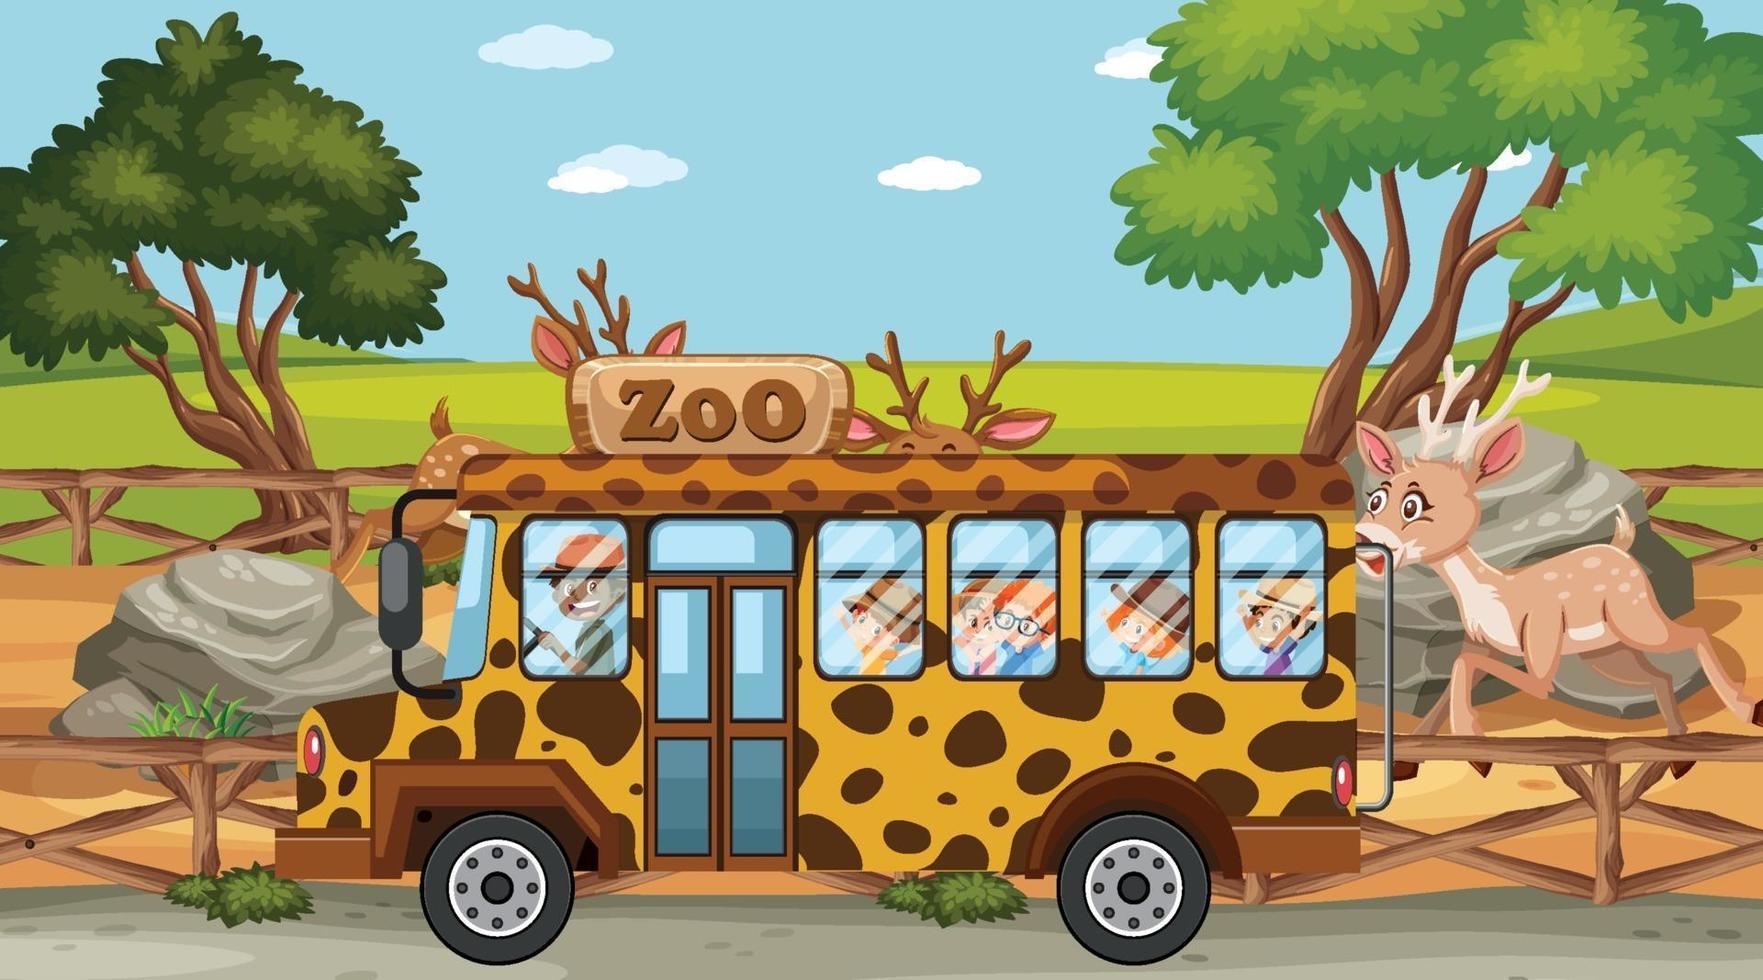 cena do zoológico com crianças no ônibus passeando vetor